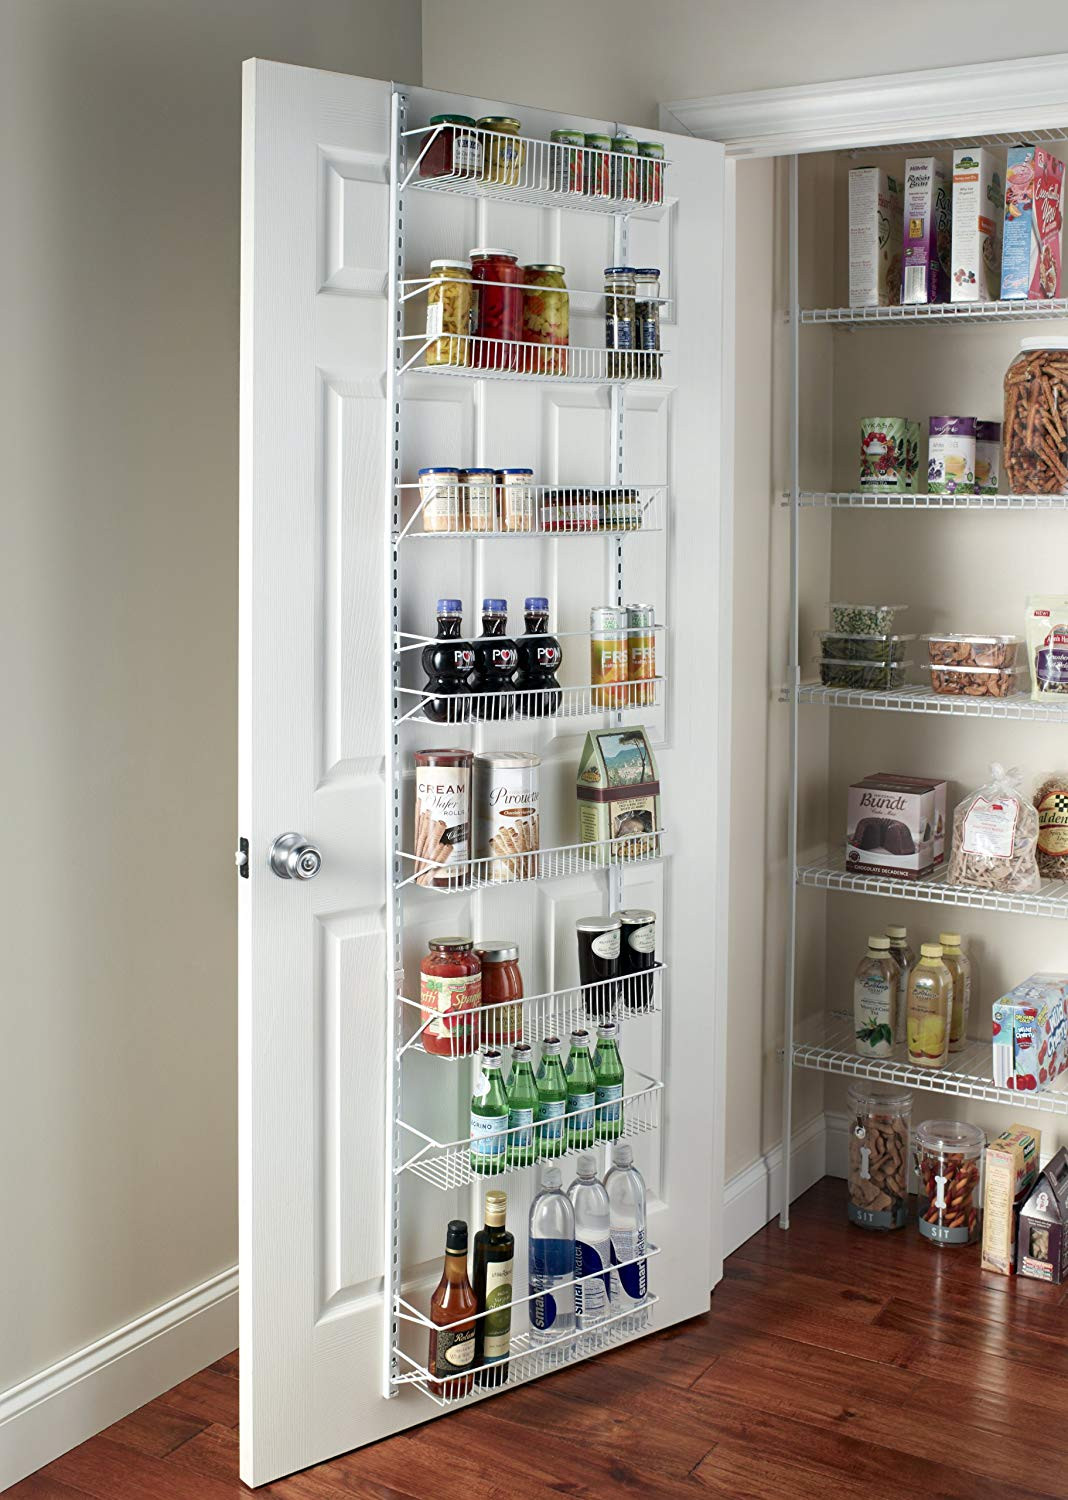 21 Trendy Amazon Kitchen Storage - Home, Family, Style and Art Ideas